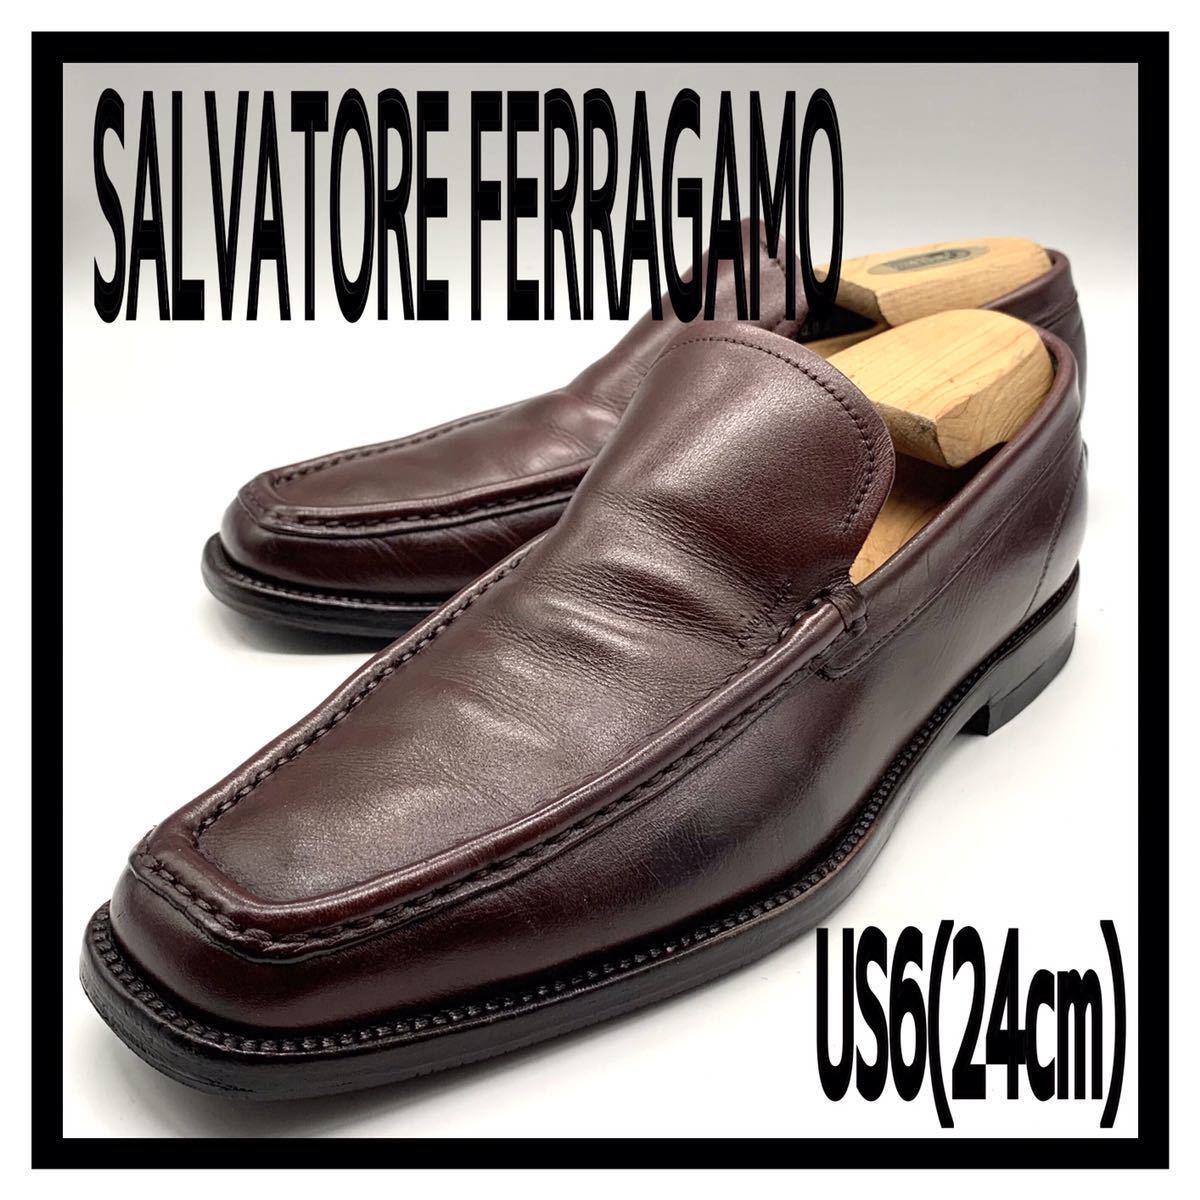 Salvatore Ferragamo (サルヴァトーレフェラガモ) スクエアトゥ ローファー スリッポン ビジネス レザー バーガンディー US6 24cm 革靴